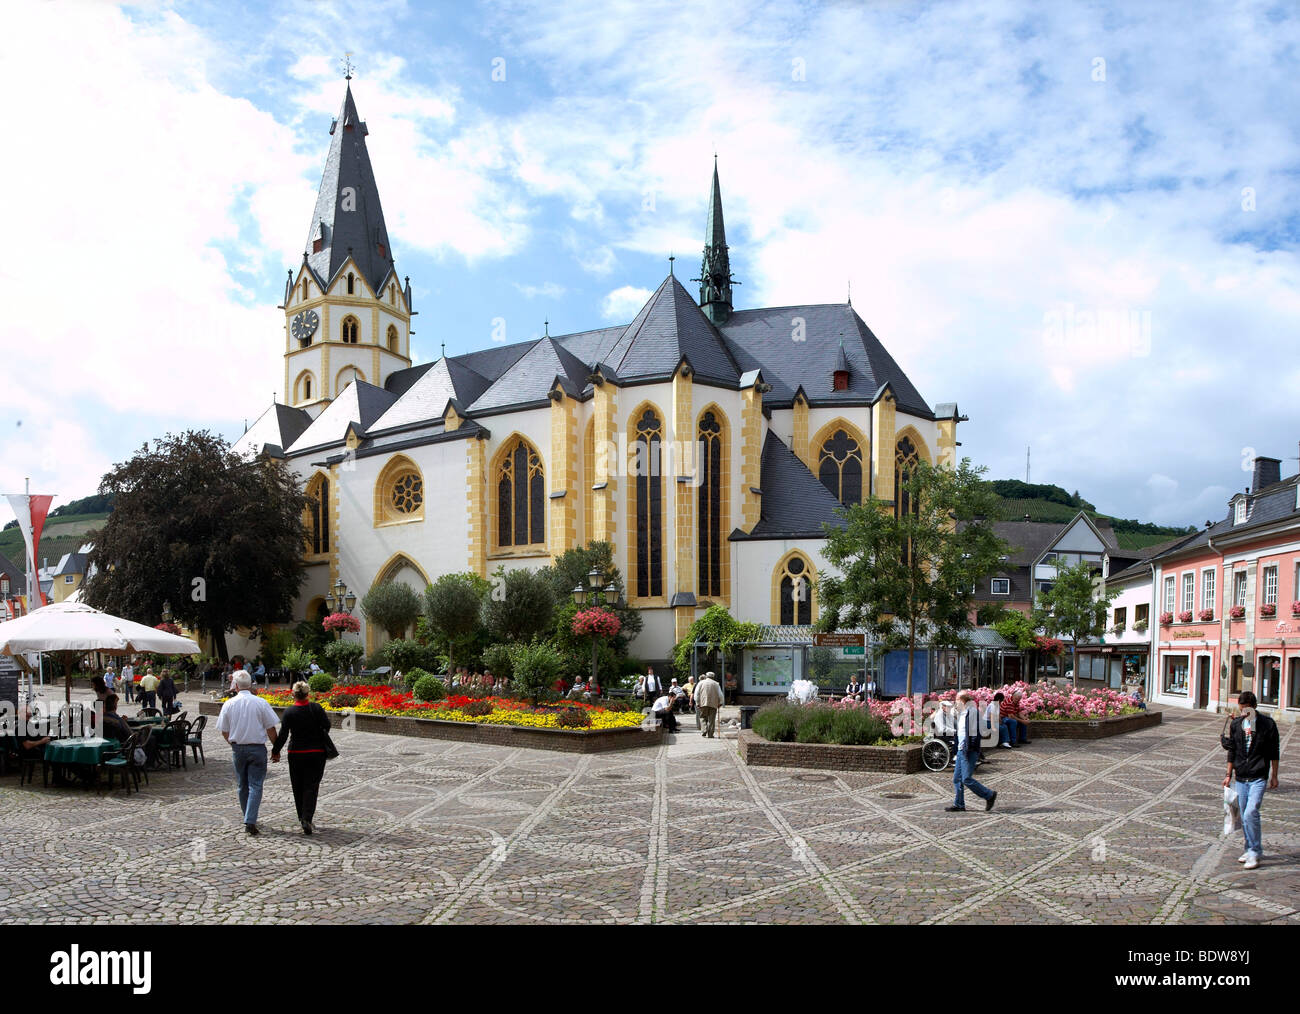 L'église paroissiale de Saint-Laurent sur le marché d'Ahrweiler, Rhénanie-Palatinat, Allemagne, Europe Banque D'Images